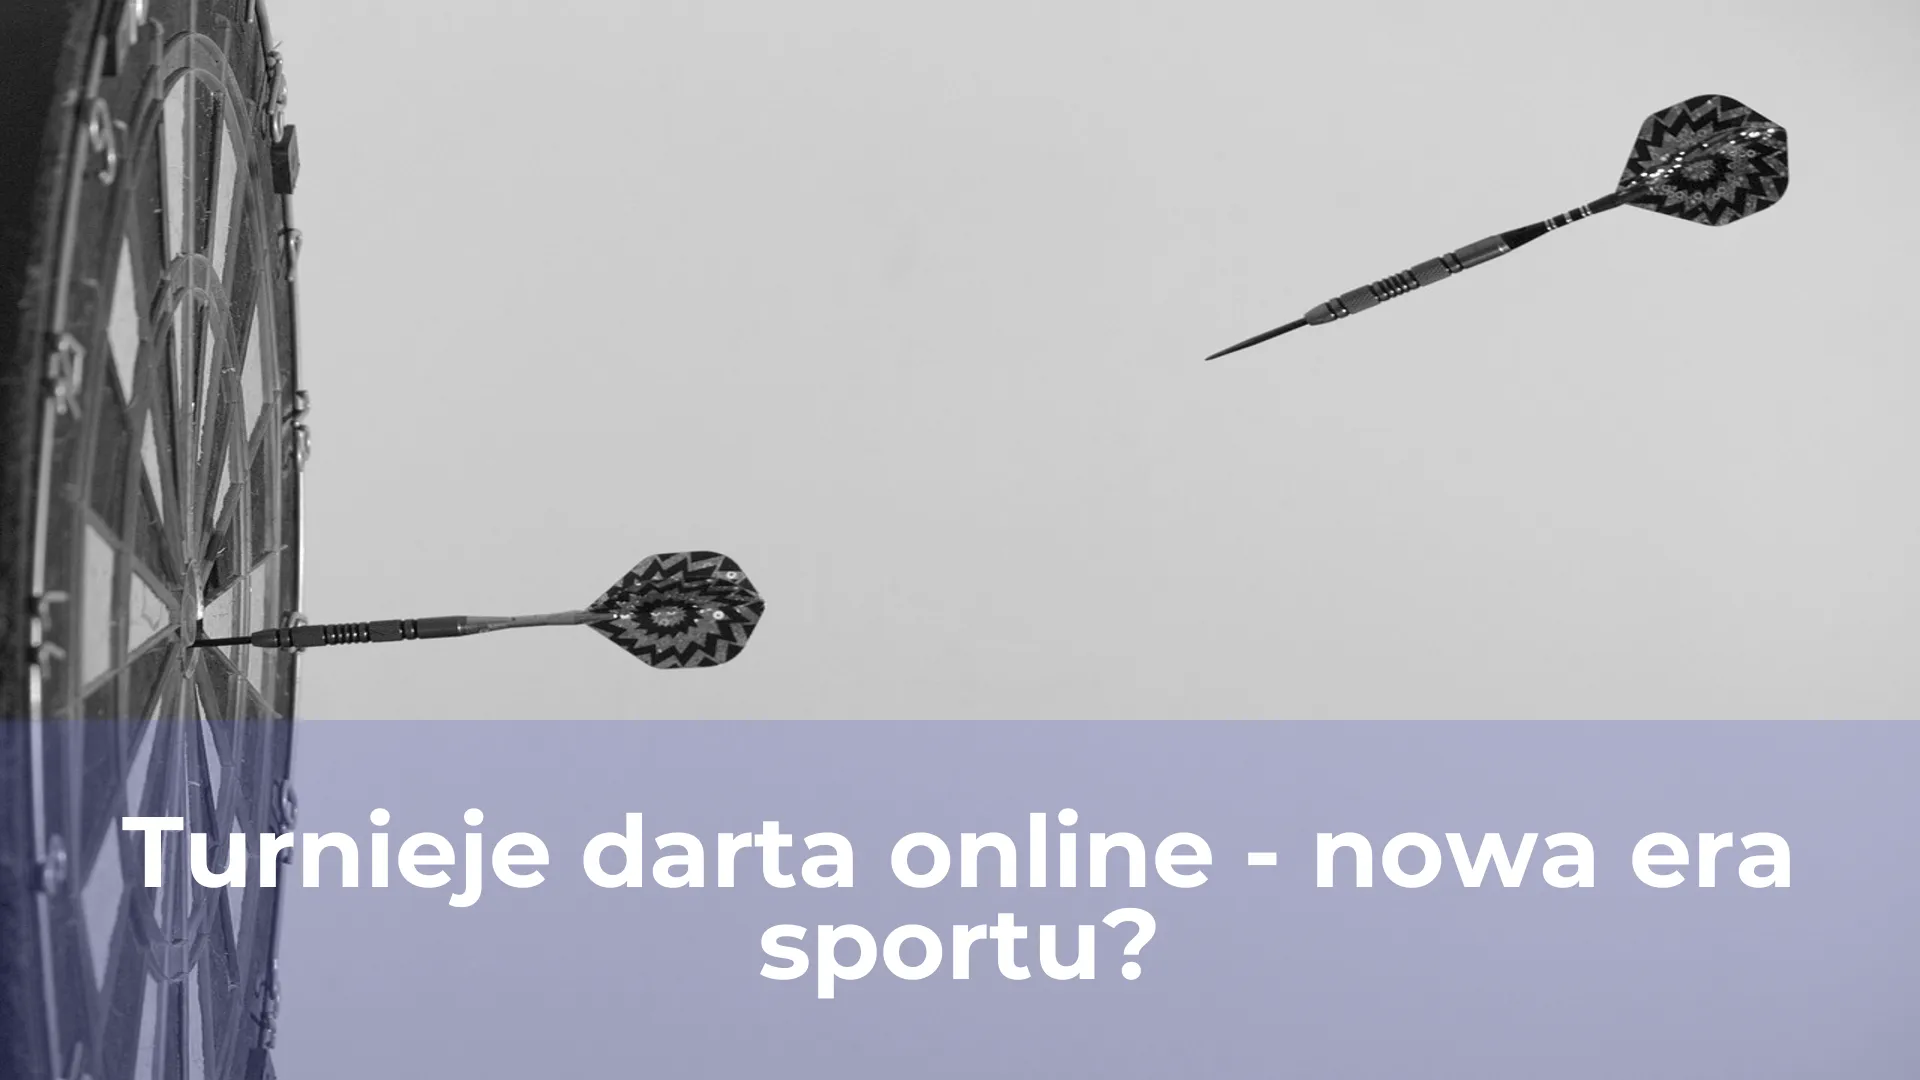 Turnieje darta online nowa era sportu